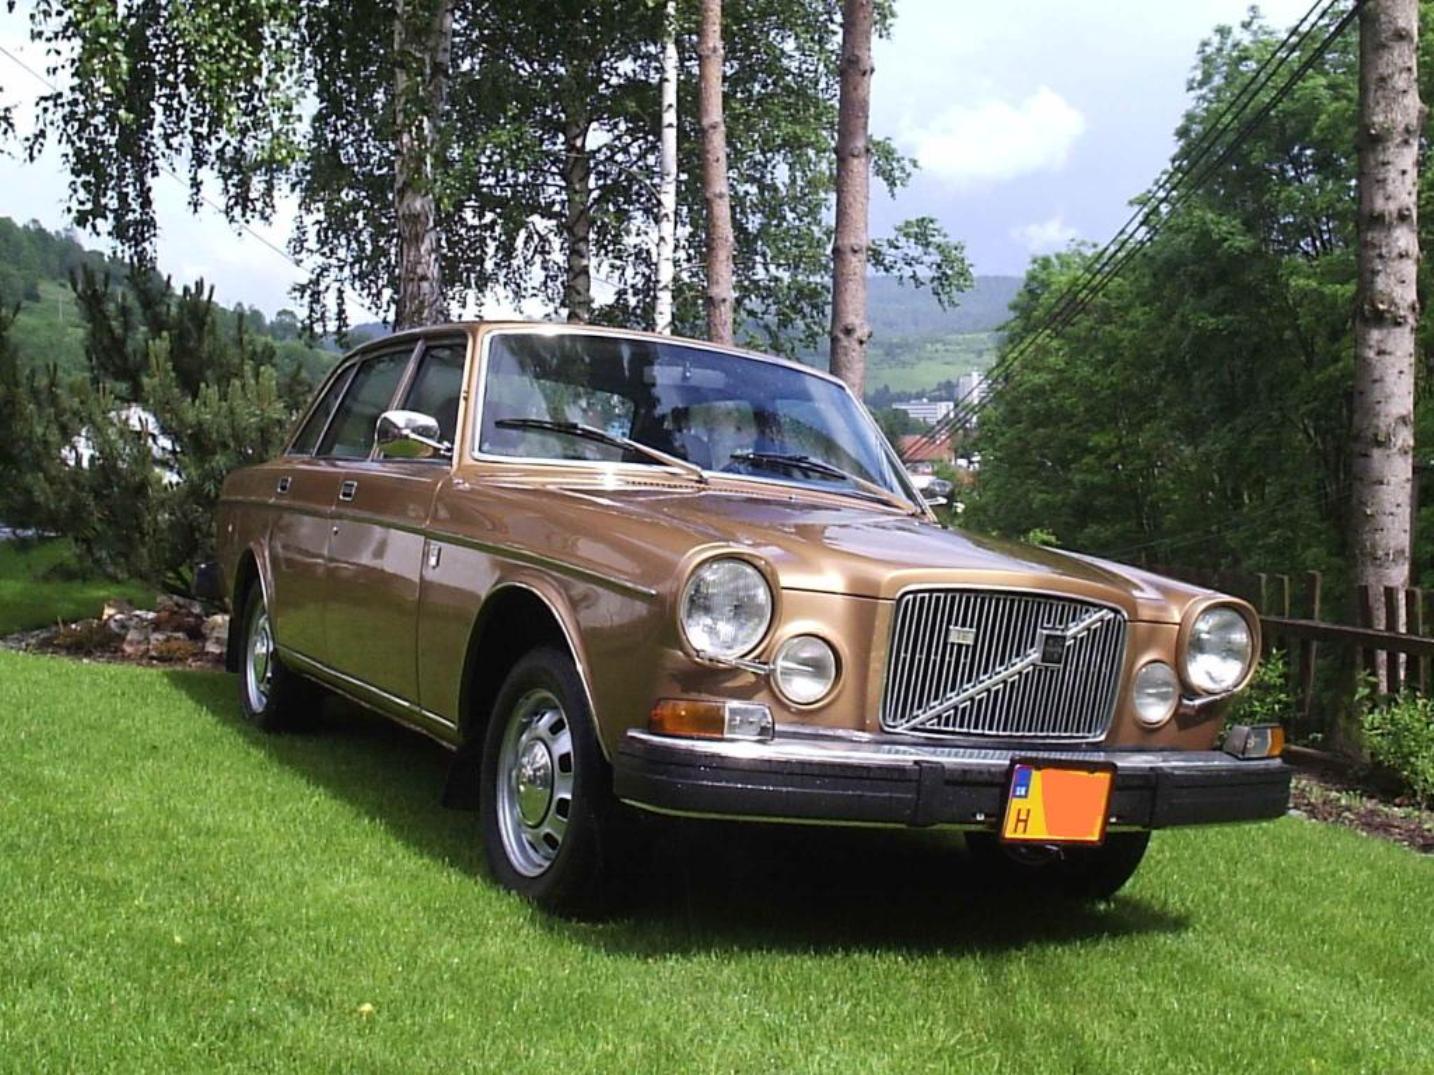 Volvo 164 TE 1974 gold Cz republic à vendre / Flickr - Partage de photos!